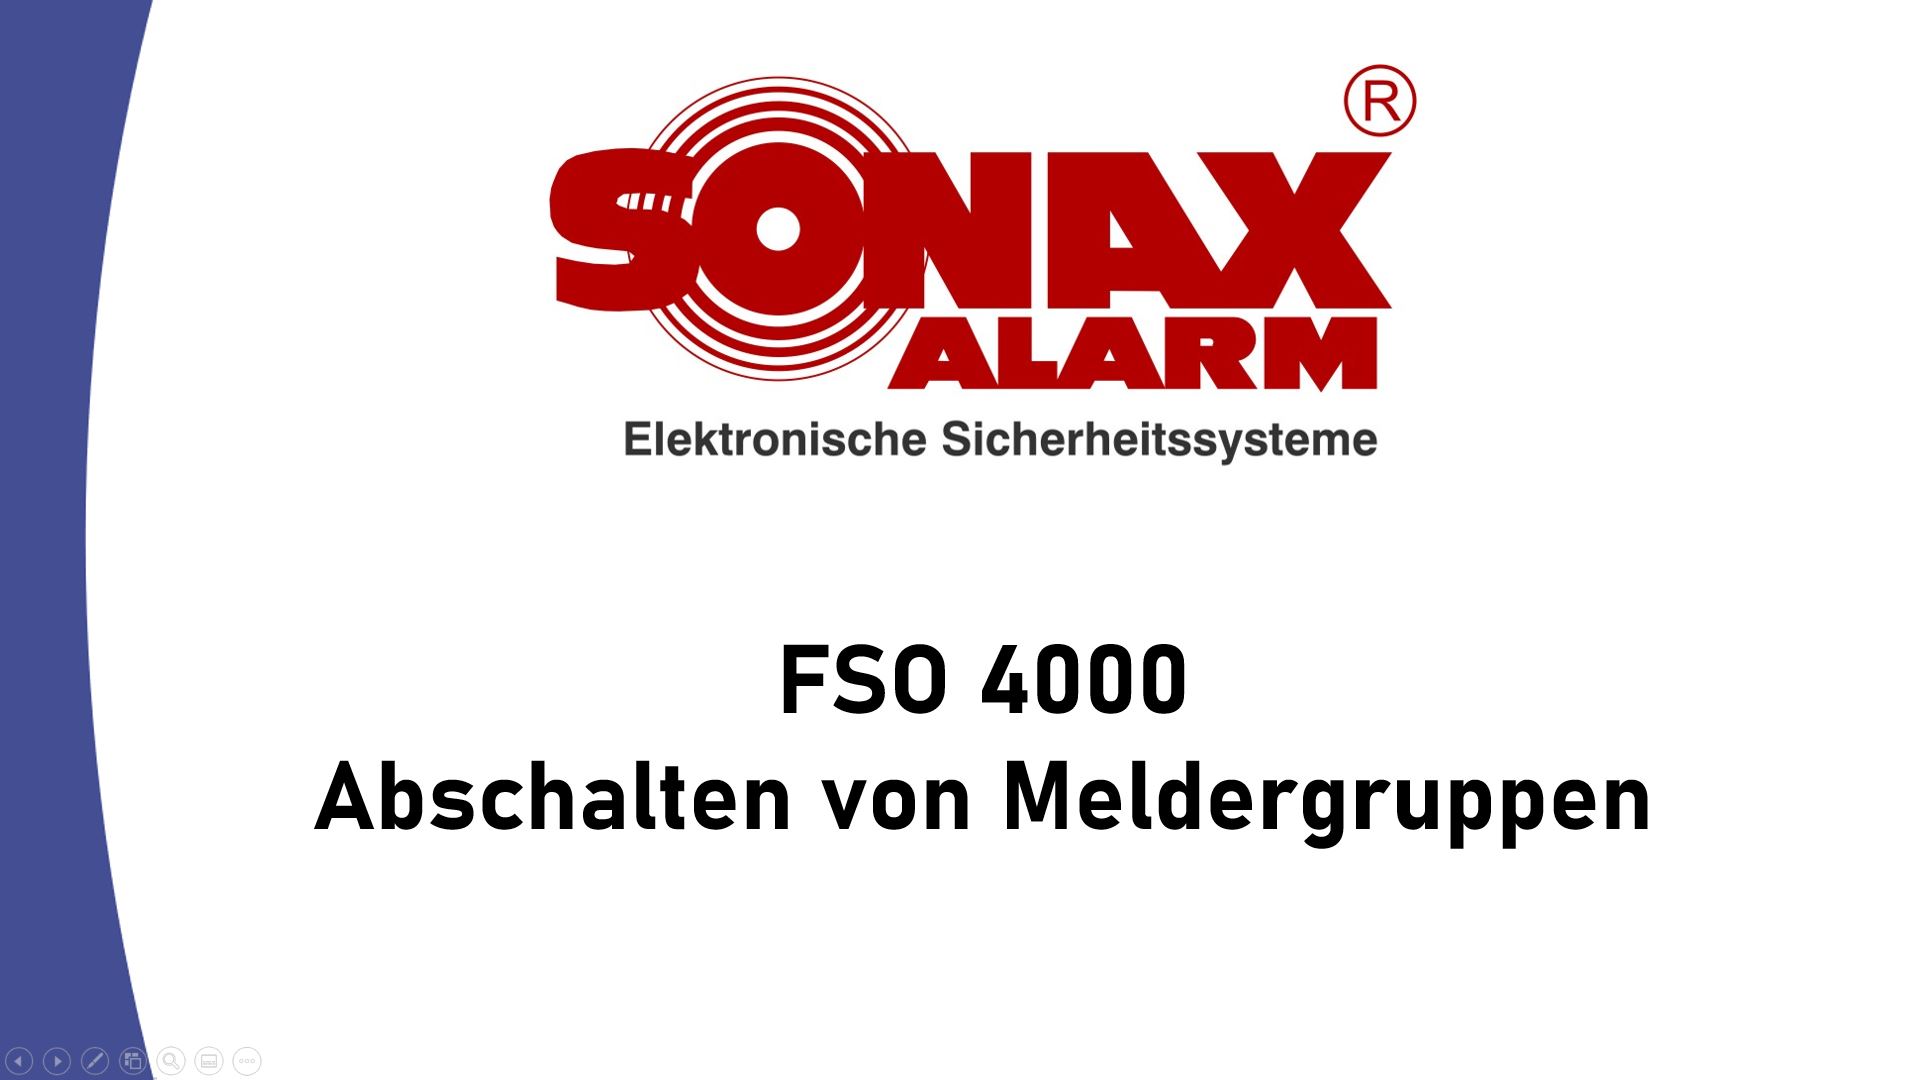 SONAX-ALARM  Elektronische Sicherheitssysteme & mehr